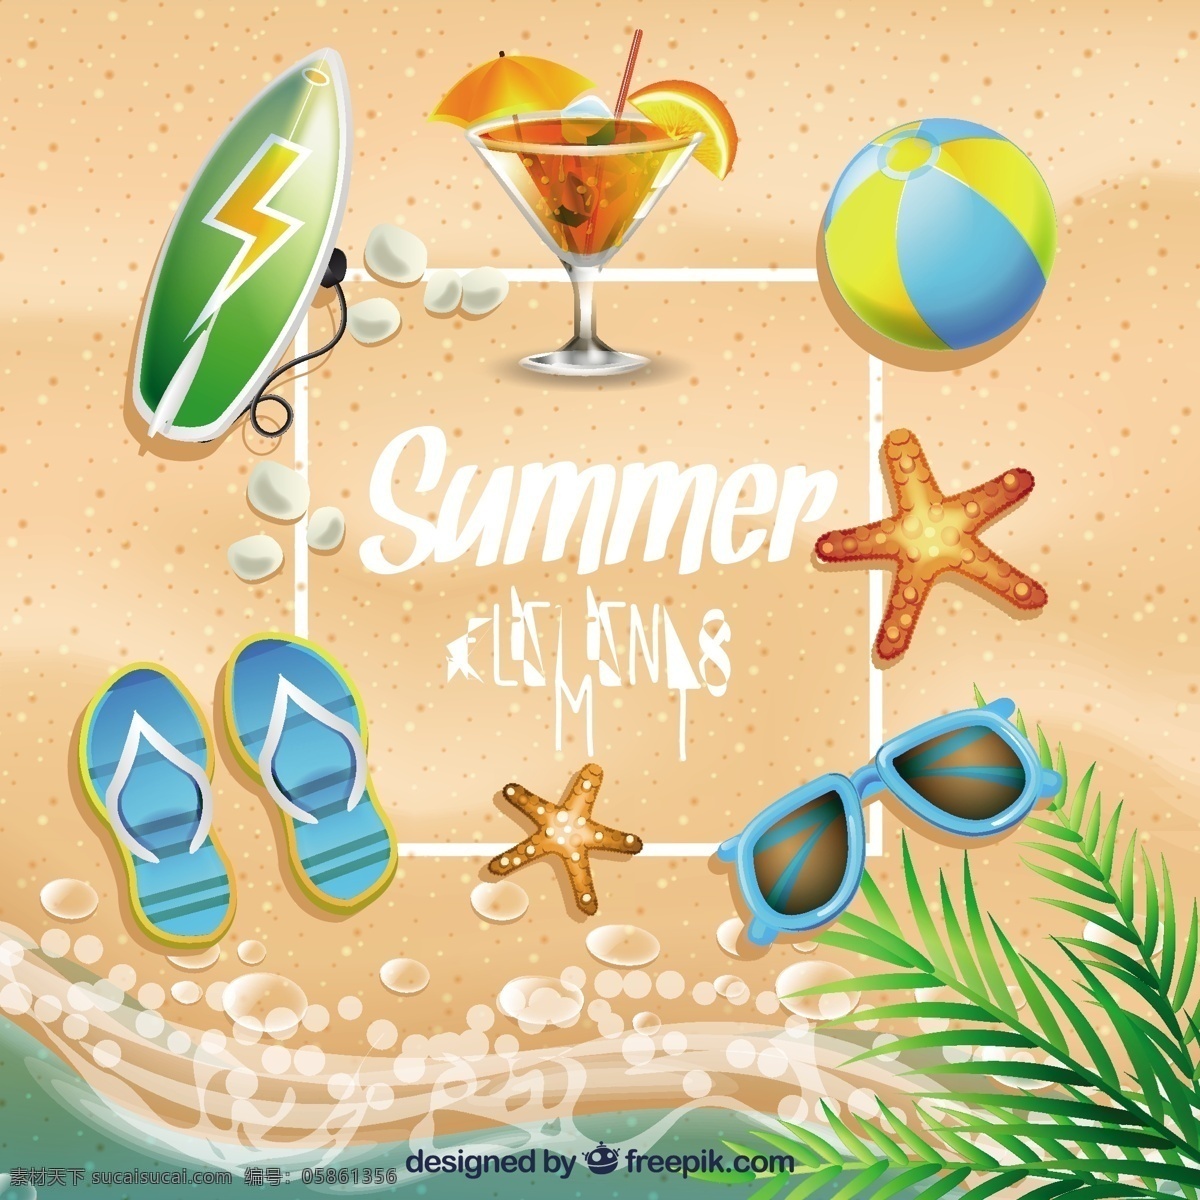 现实 元素 种类 夏季 夏天 大海 沙滩 颜色 节日 饮料 鸡尾酒 球 太阳镜 度假 夏日海滩 季节 海星 冲浪板 触发器 色